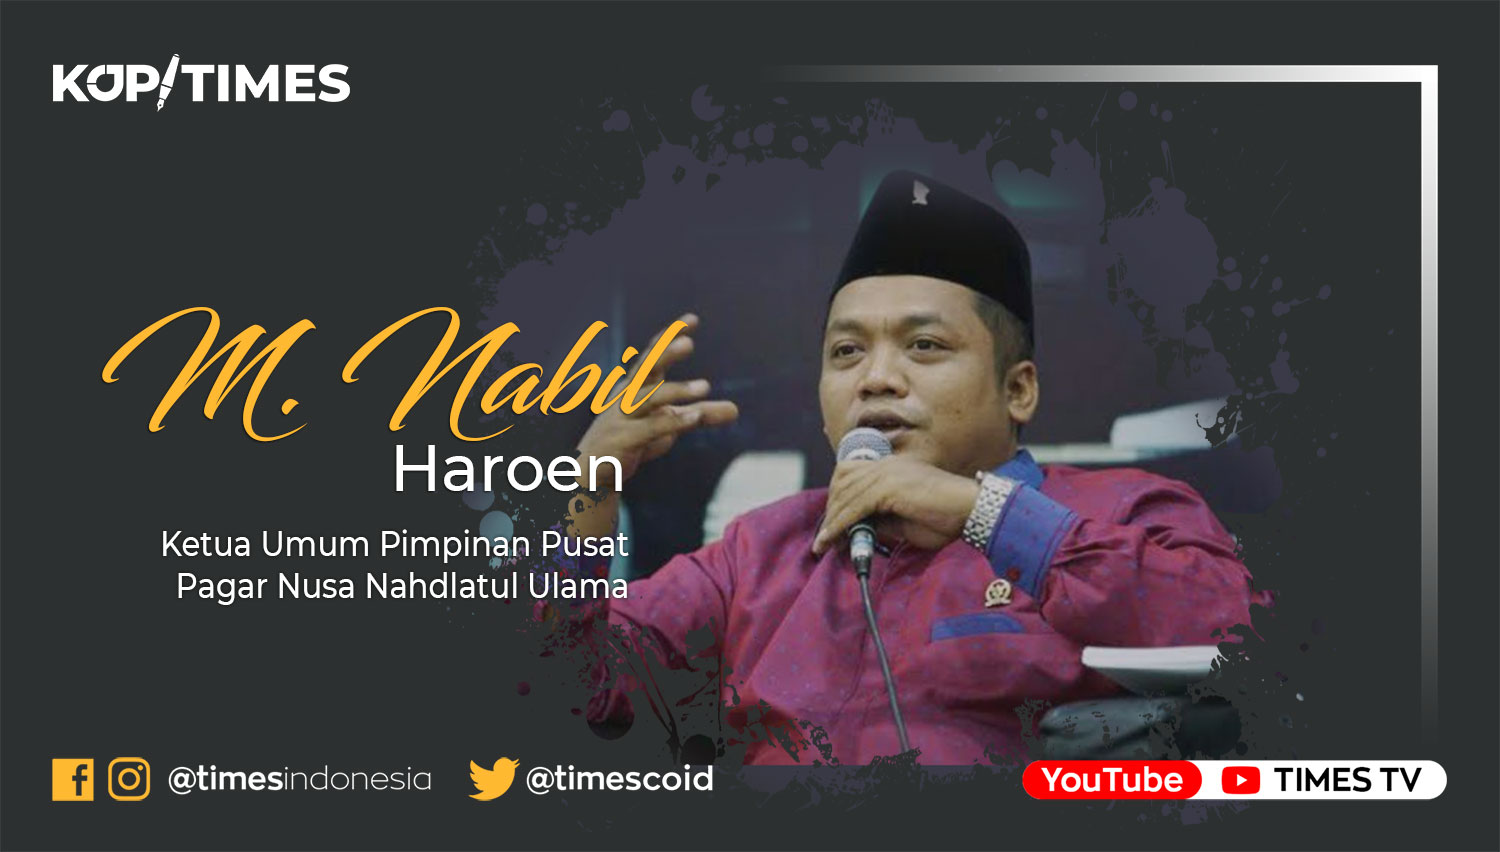 M. Nabil Haroen, Ketua Umum Pimpinan Pusat Pagar Nusa Nahdlatul Ulama.